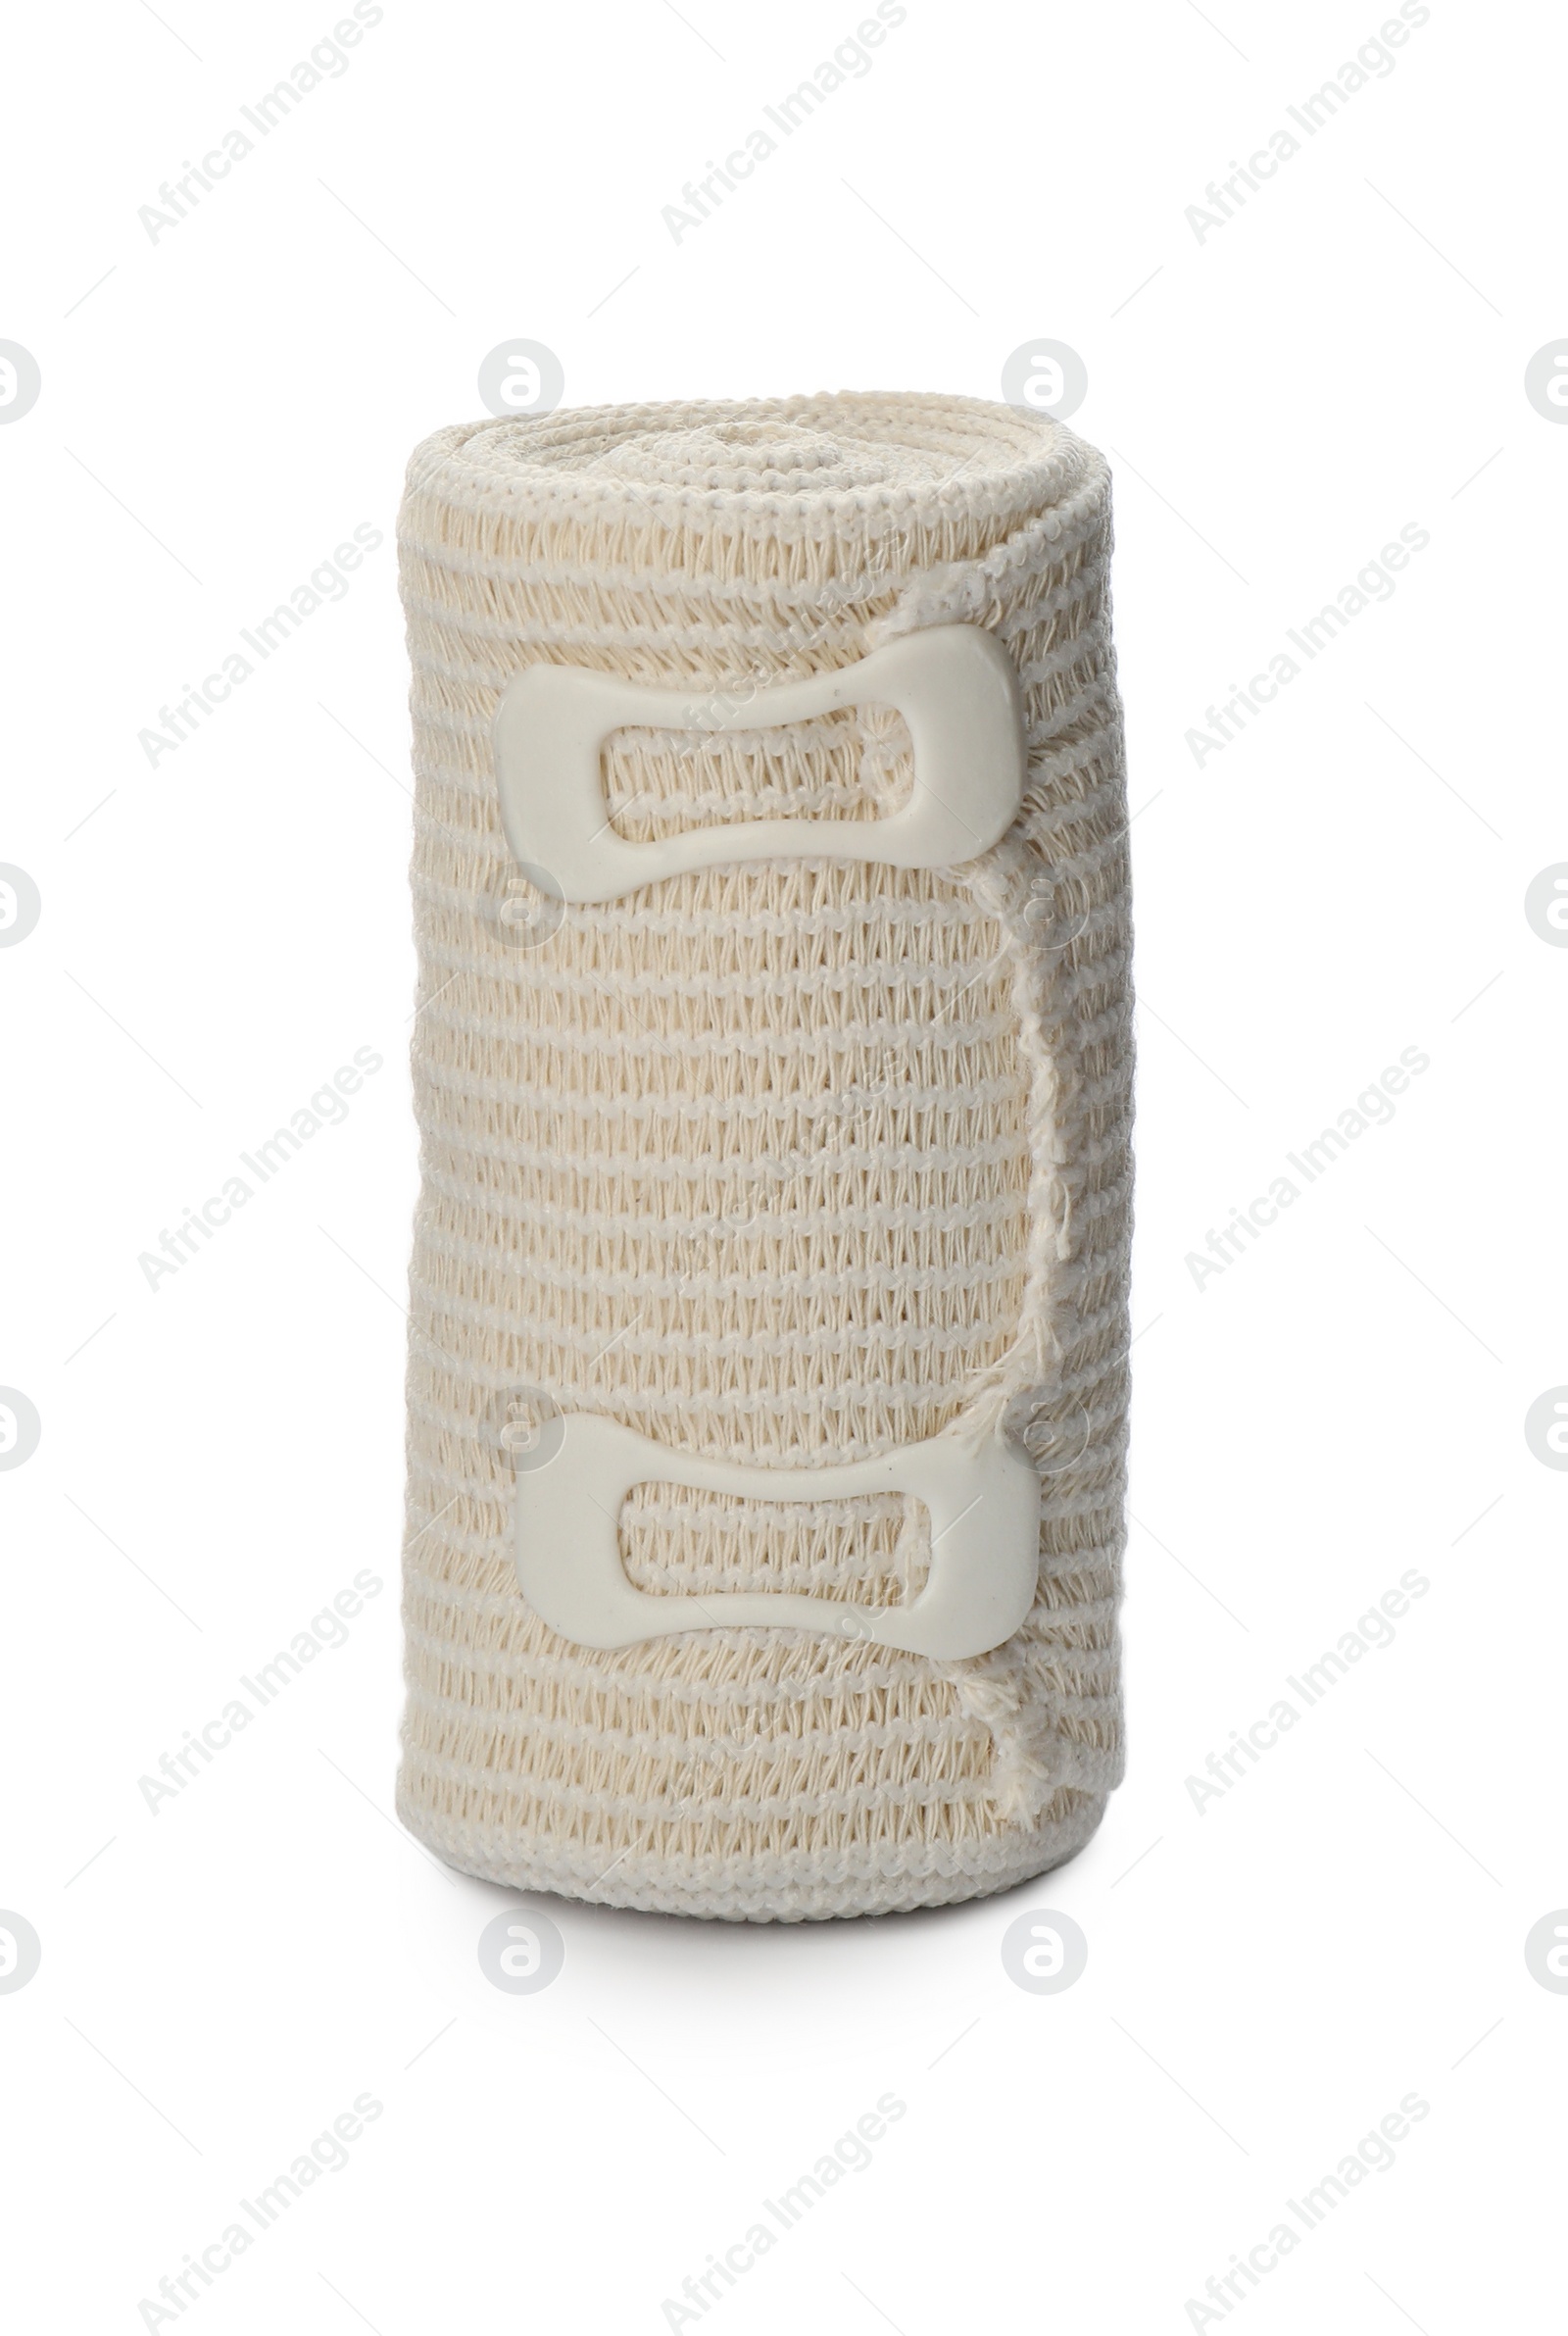 Photo of One medical bandage roll isolated on white